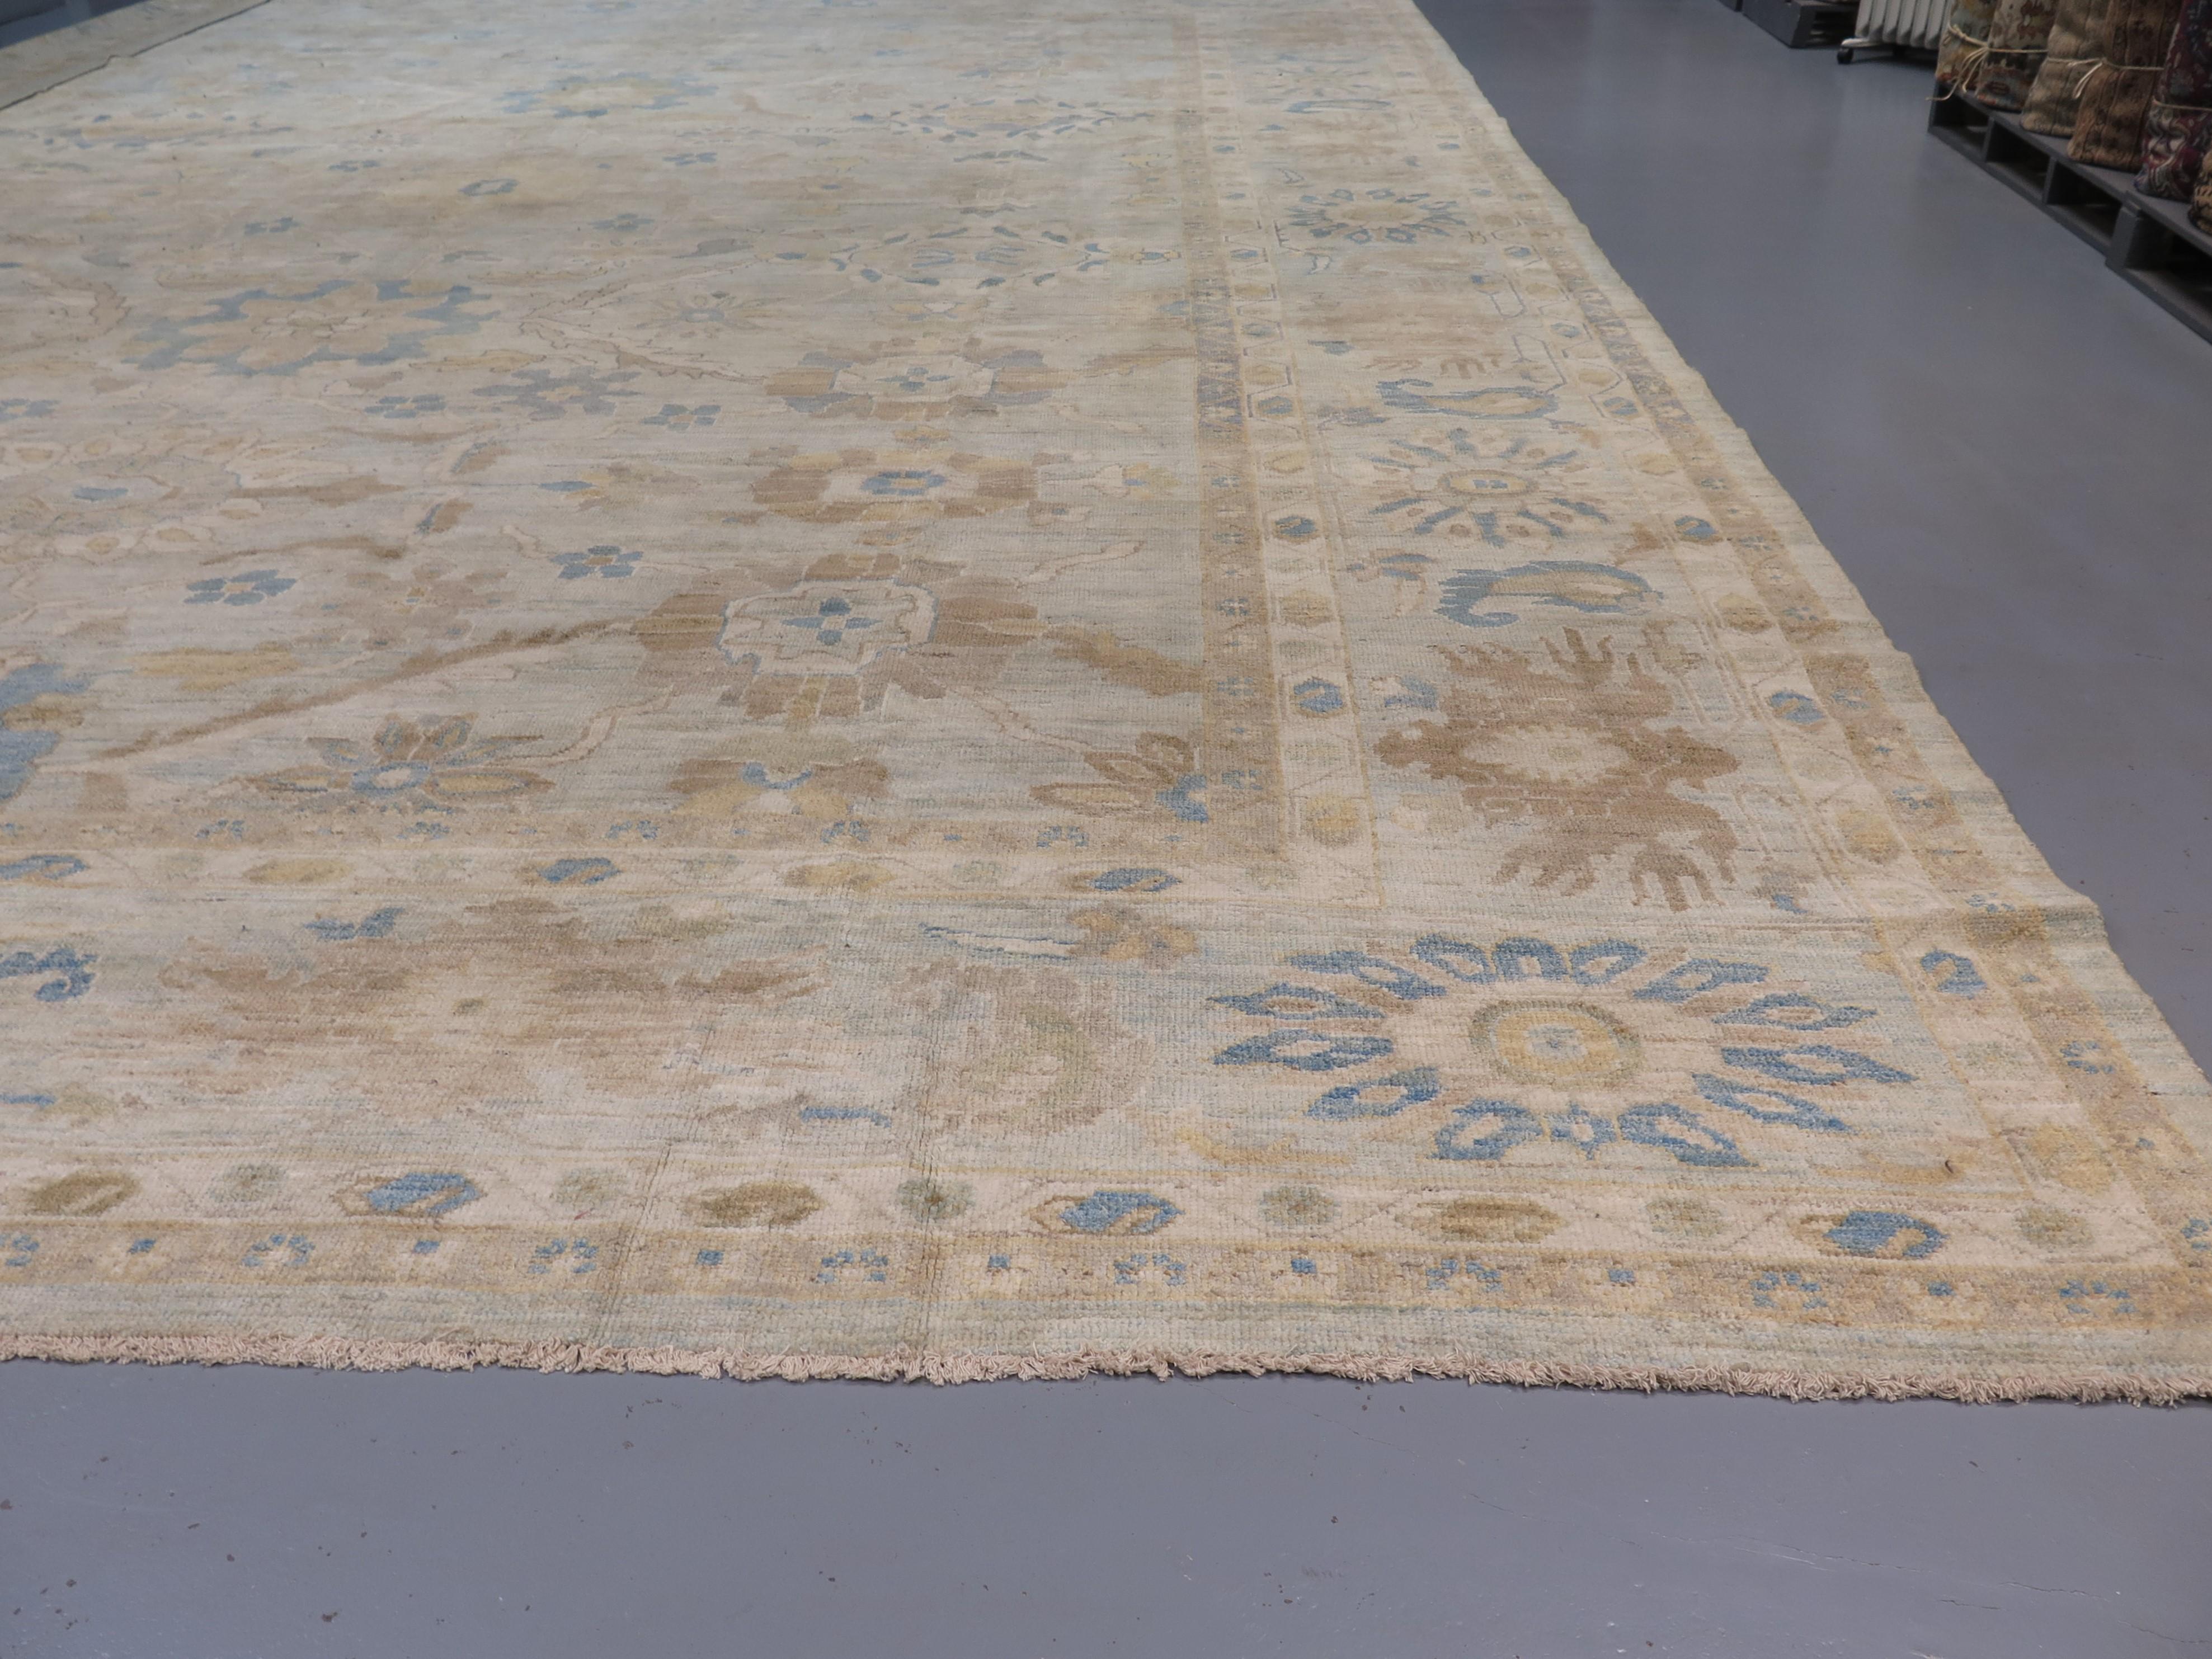 Les tapis Ziegler Sultanabad ont été commandés à l'origine en Perse pour le marché occidental à la fin du XIXe siècle, afin de compléter les goûts occidentaux en matière d'ameublement. Ils sont rapidement devenus populaires au Royaume-Uni et en